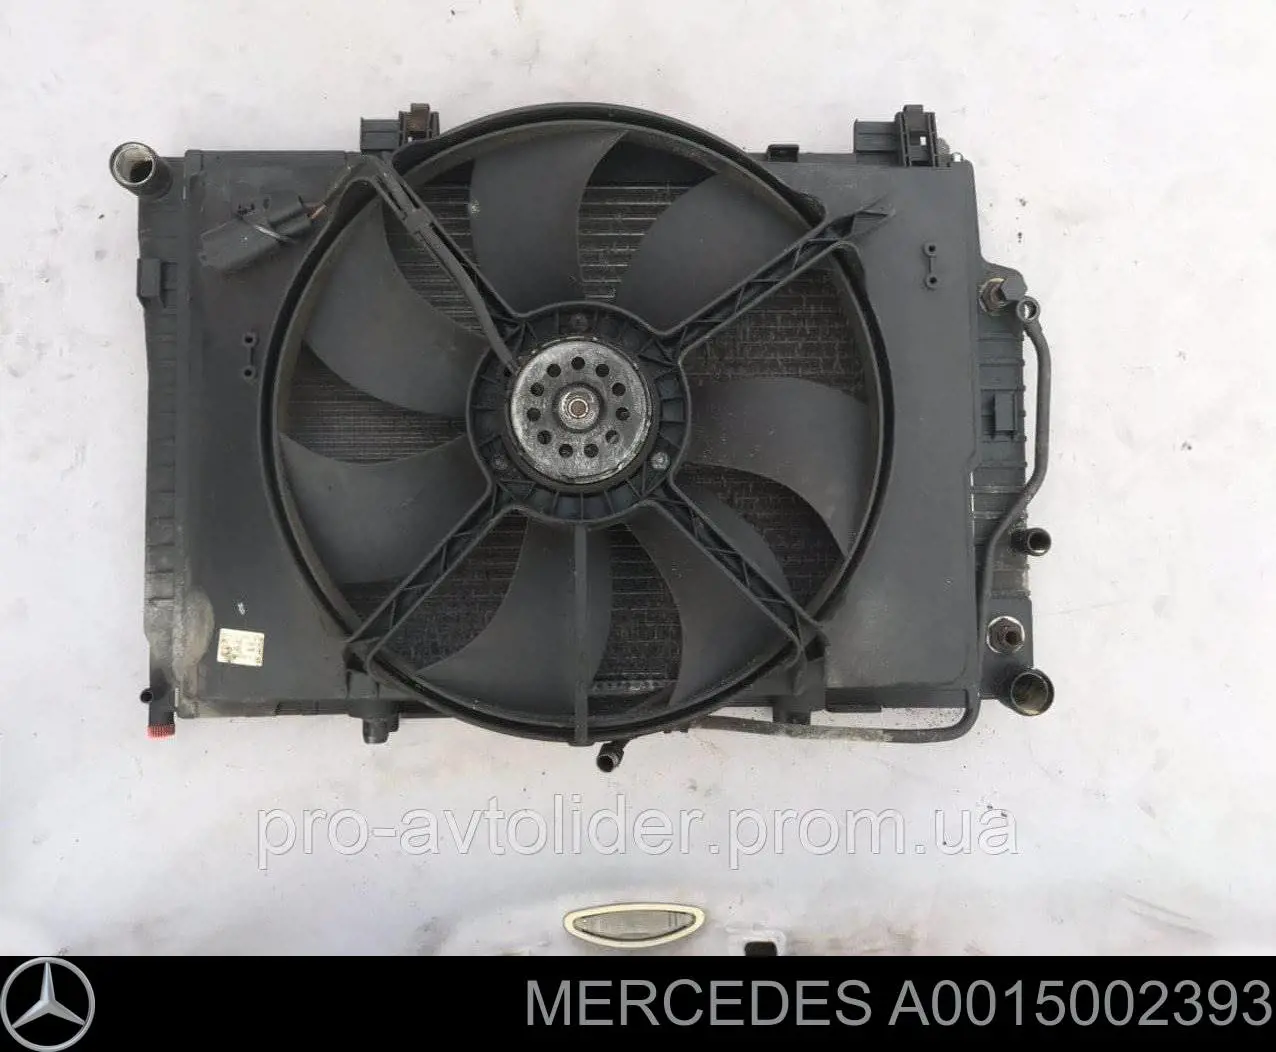 0015002393 Mercedes difusor do radiador de esfriamento, montado com motor e roda de aletas